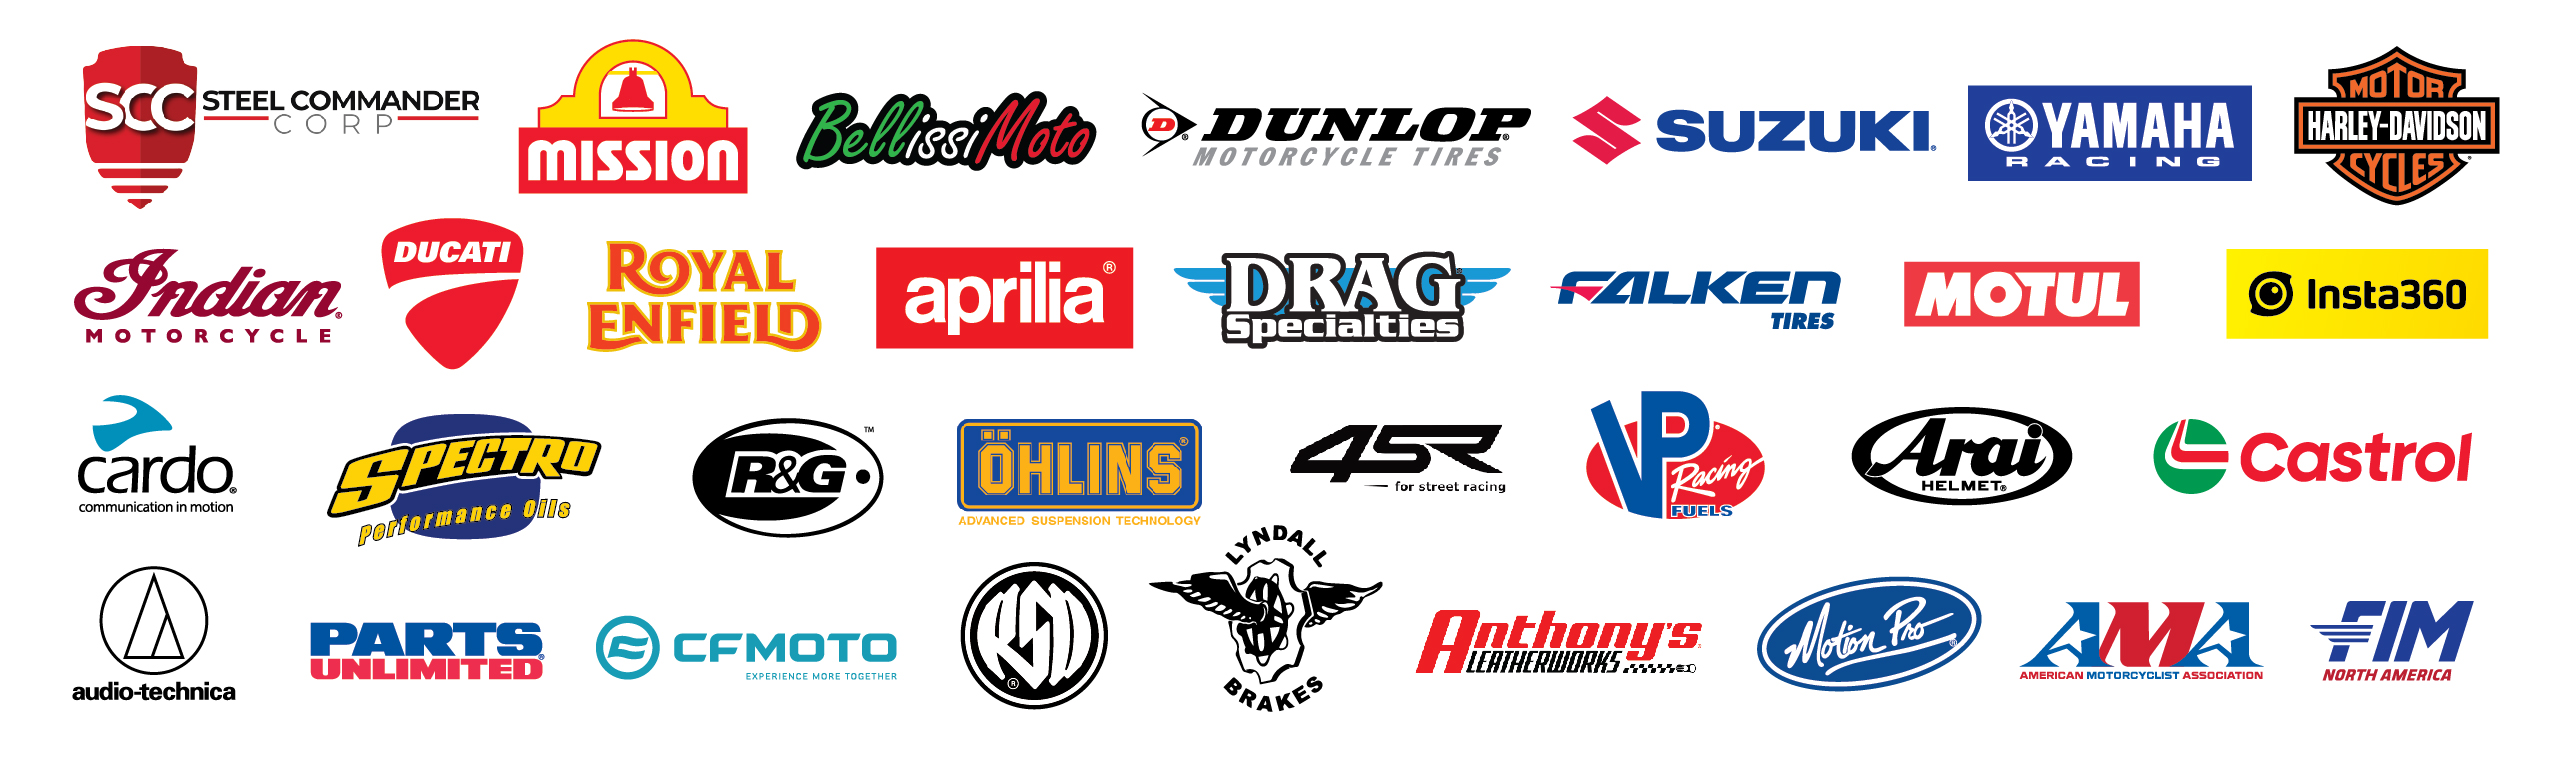 DAYTONA 200 sponsor logos